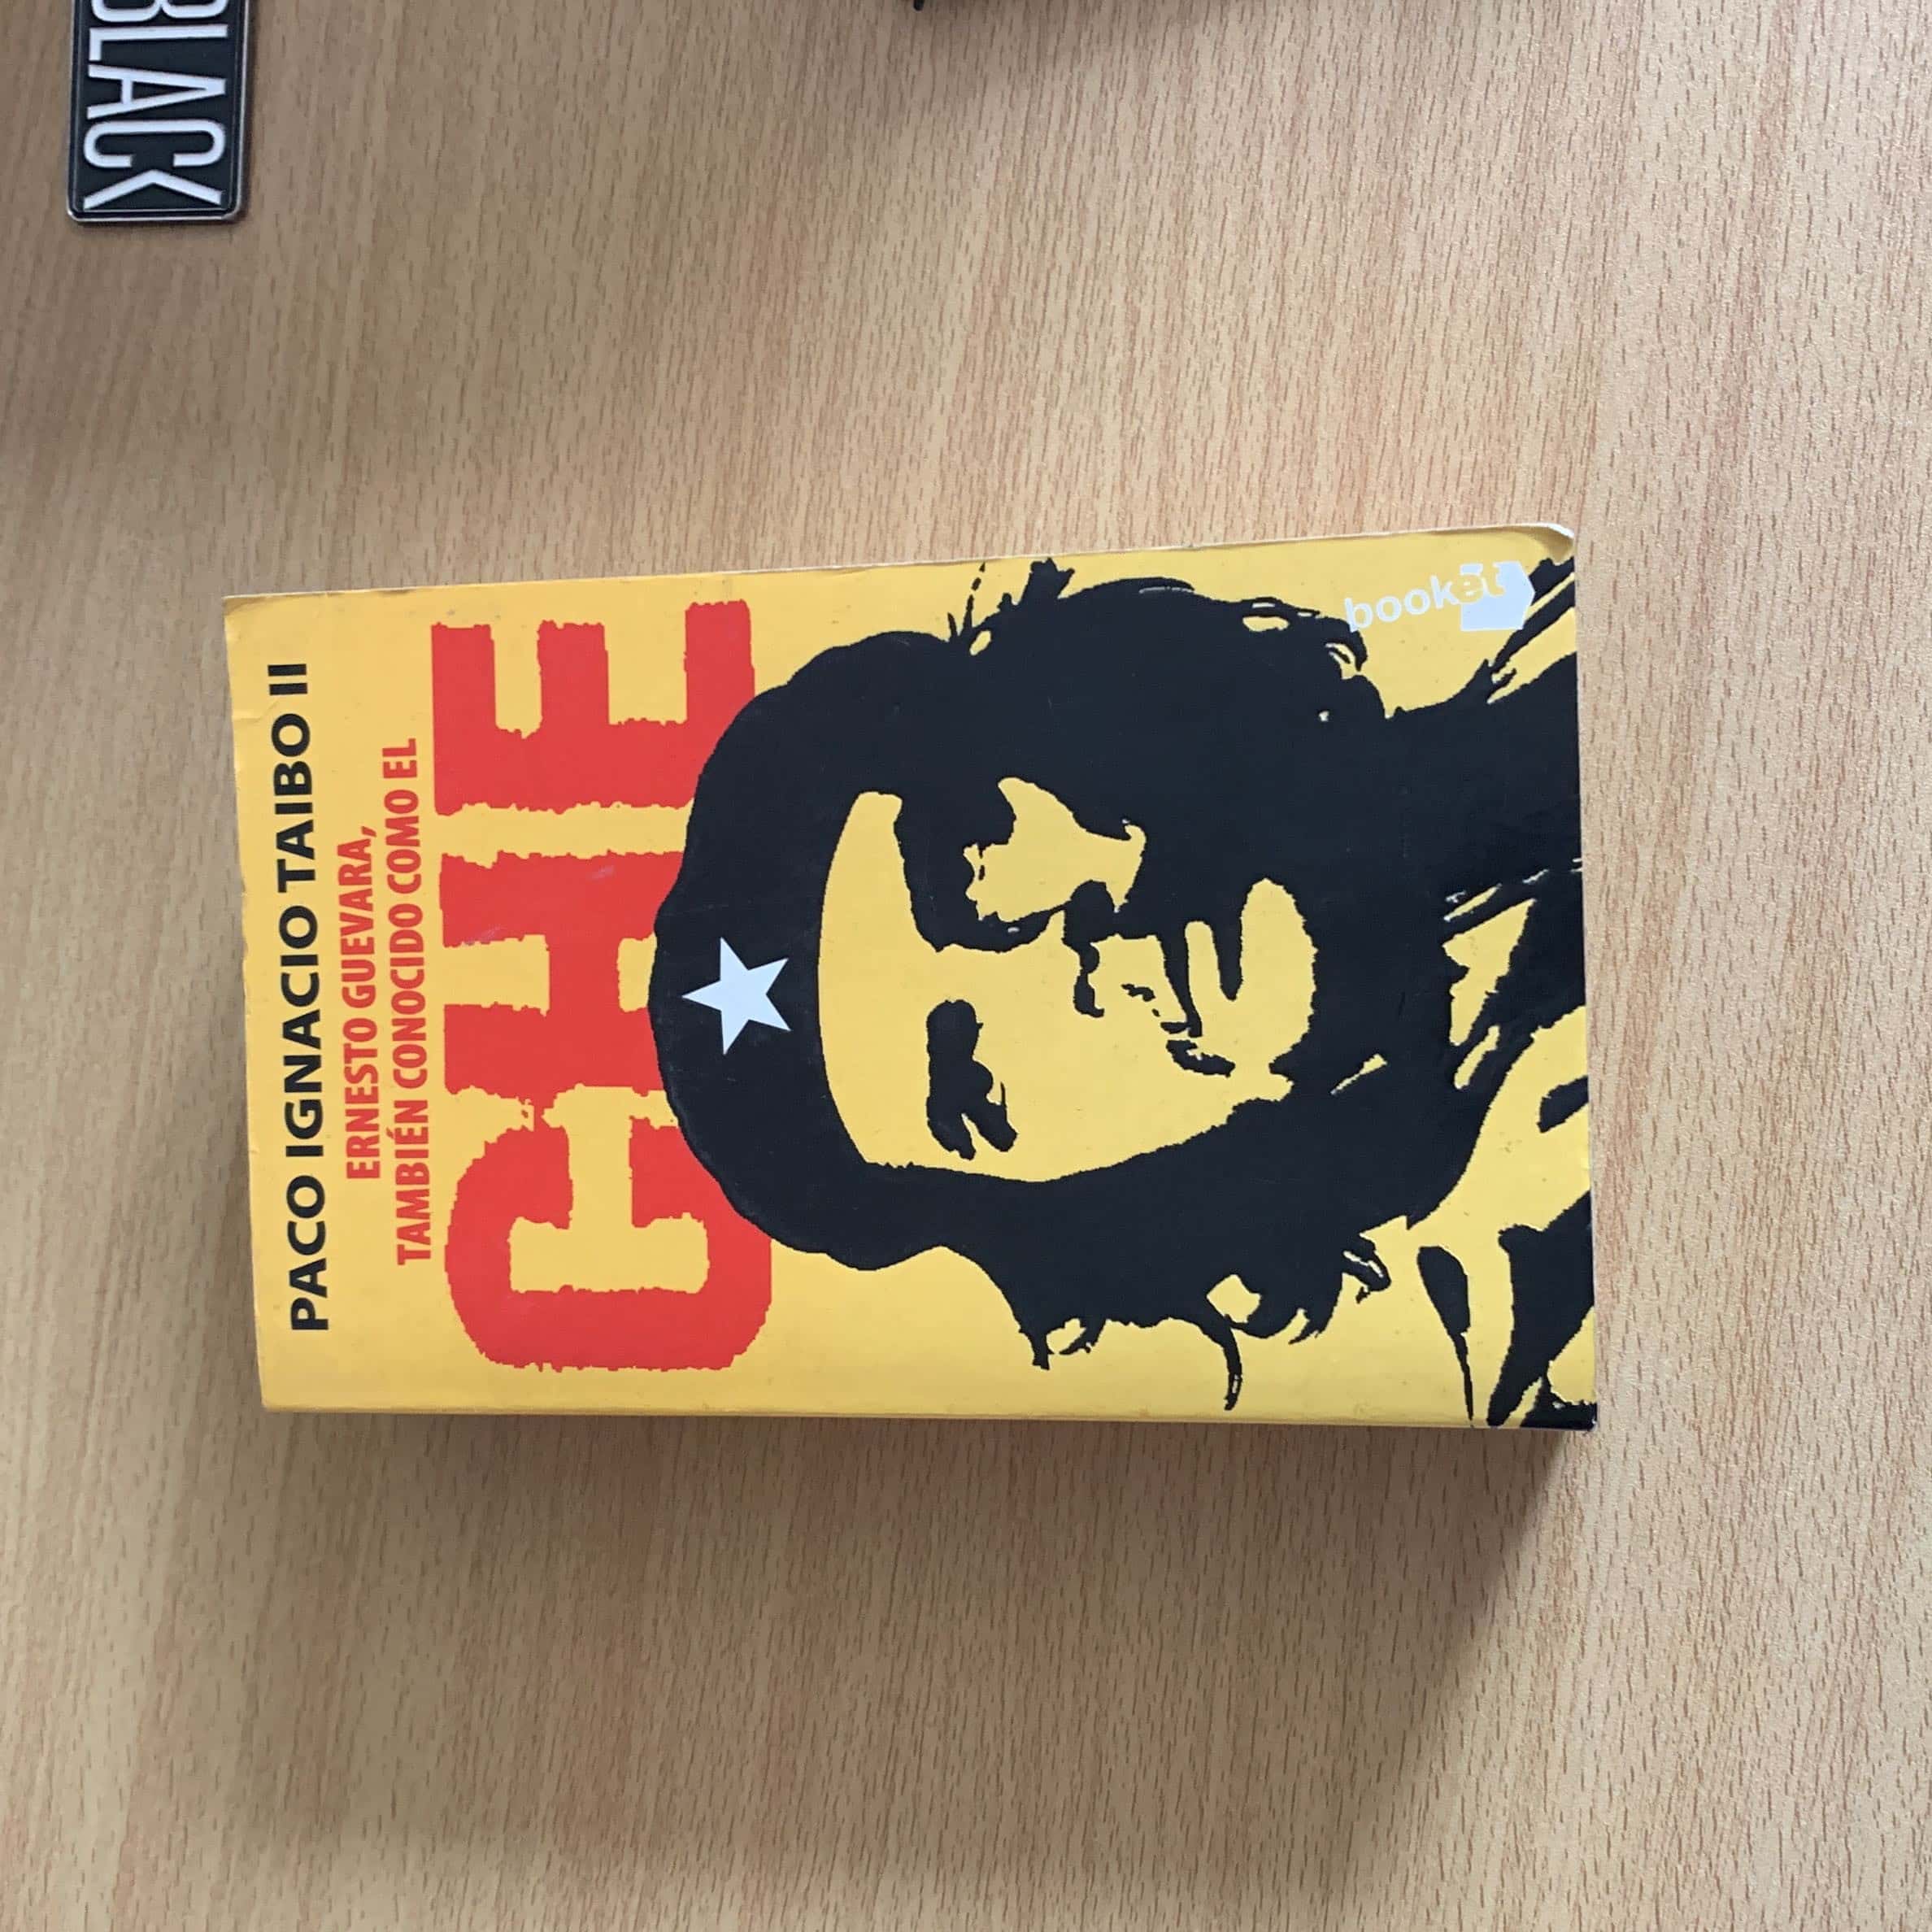 Libro de segunda mano: Ernesto Guevara, también conocido como el Che